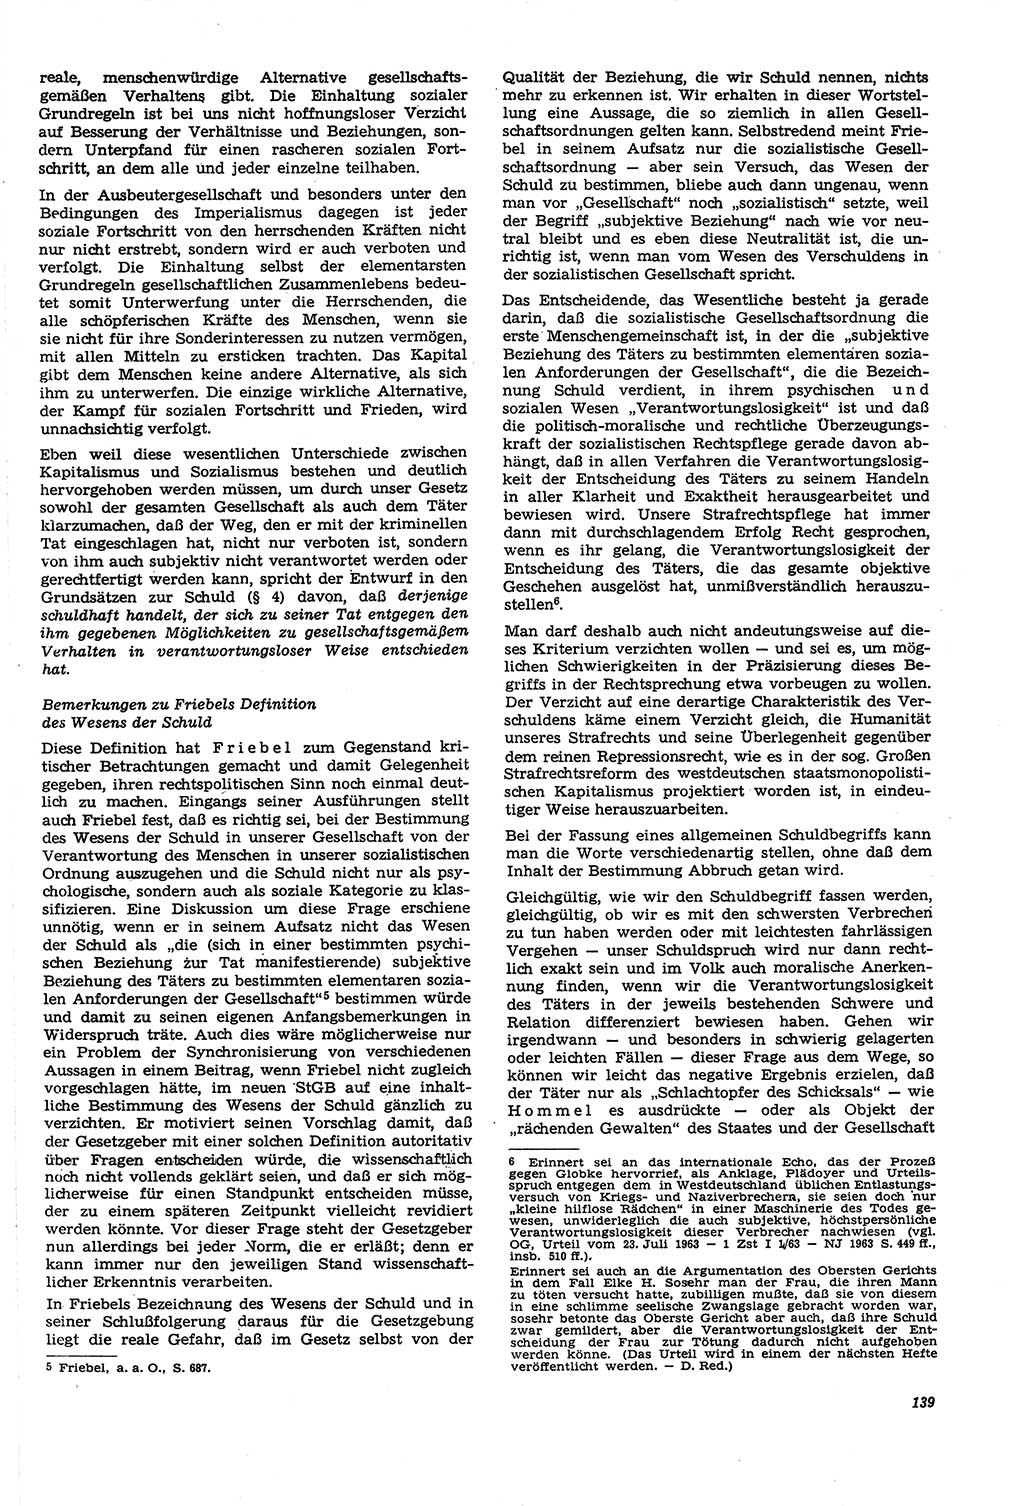 Neue Justiz (NJ), Zeitschrift für Recht und Rechtswissenschaft [Deutsche Demokratische Republik (DDR)], 21. Jahrgang 1967, Seite 139 (NJ DDR 1967, S. 139)